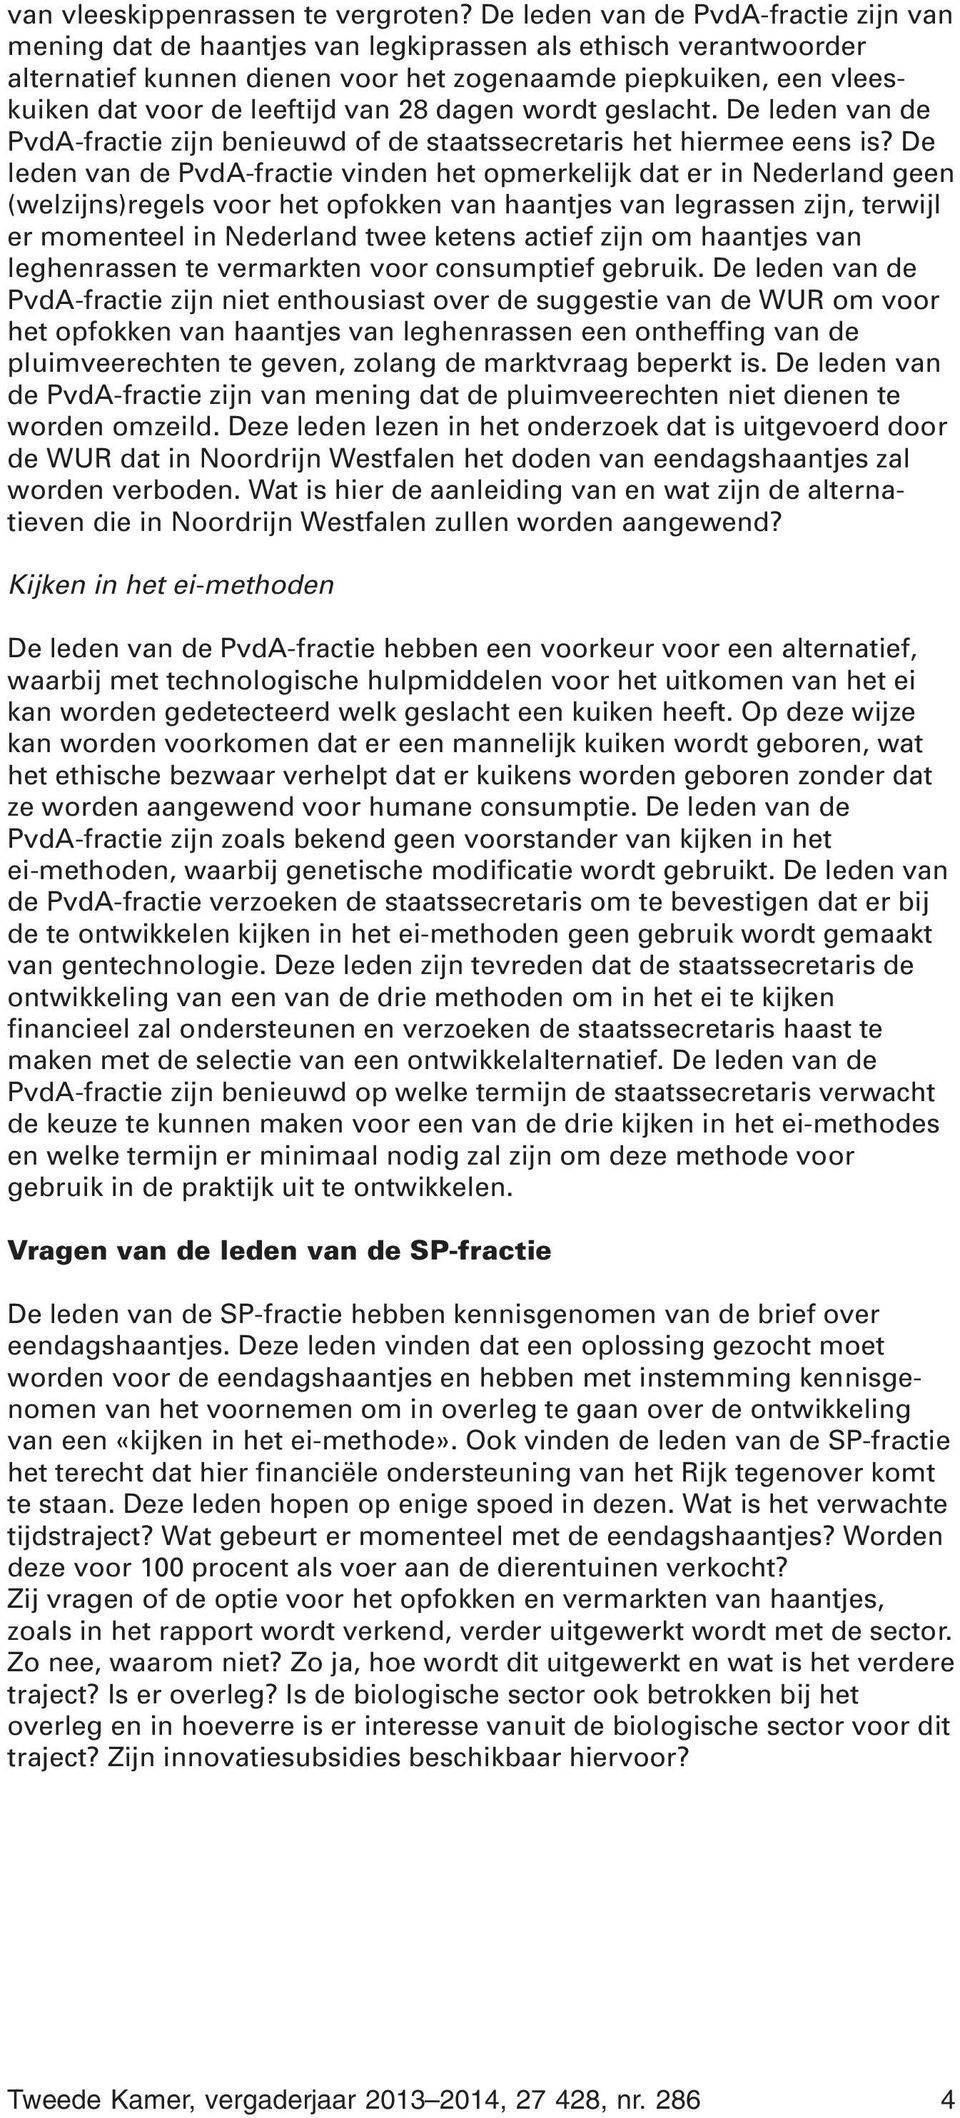 van 28 dagen wordt geslacht. De leden van de PvdA-fractie zijn benieuwd of de staatssecretaris het hiermee eens is?